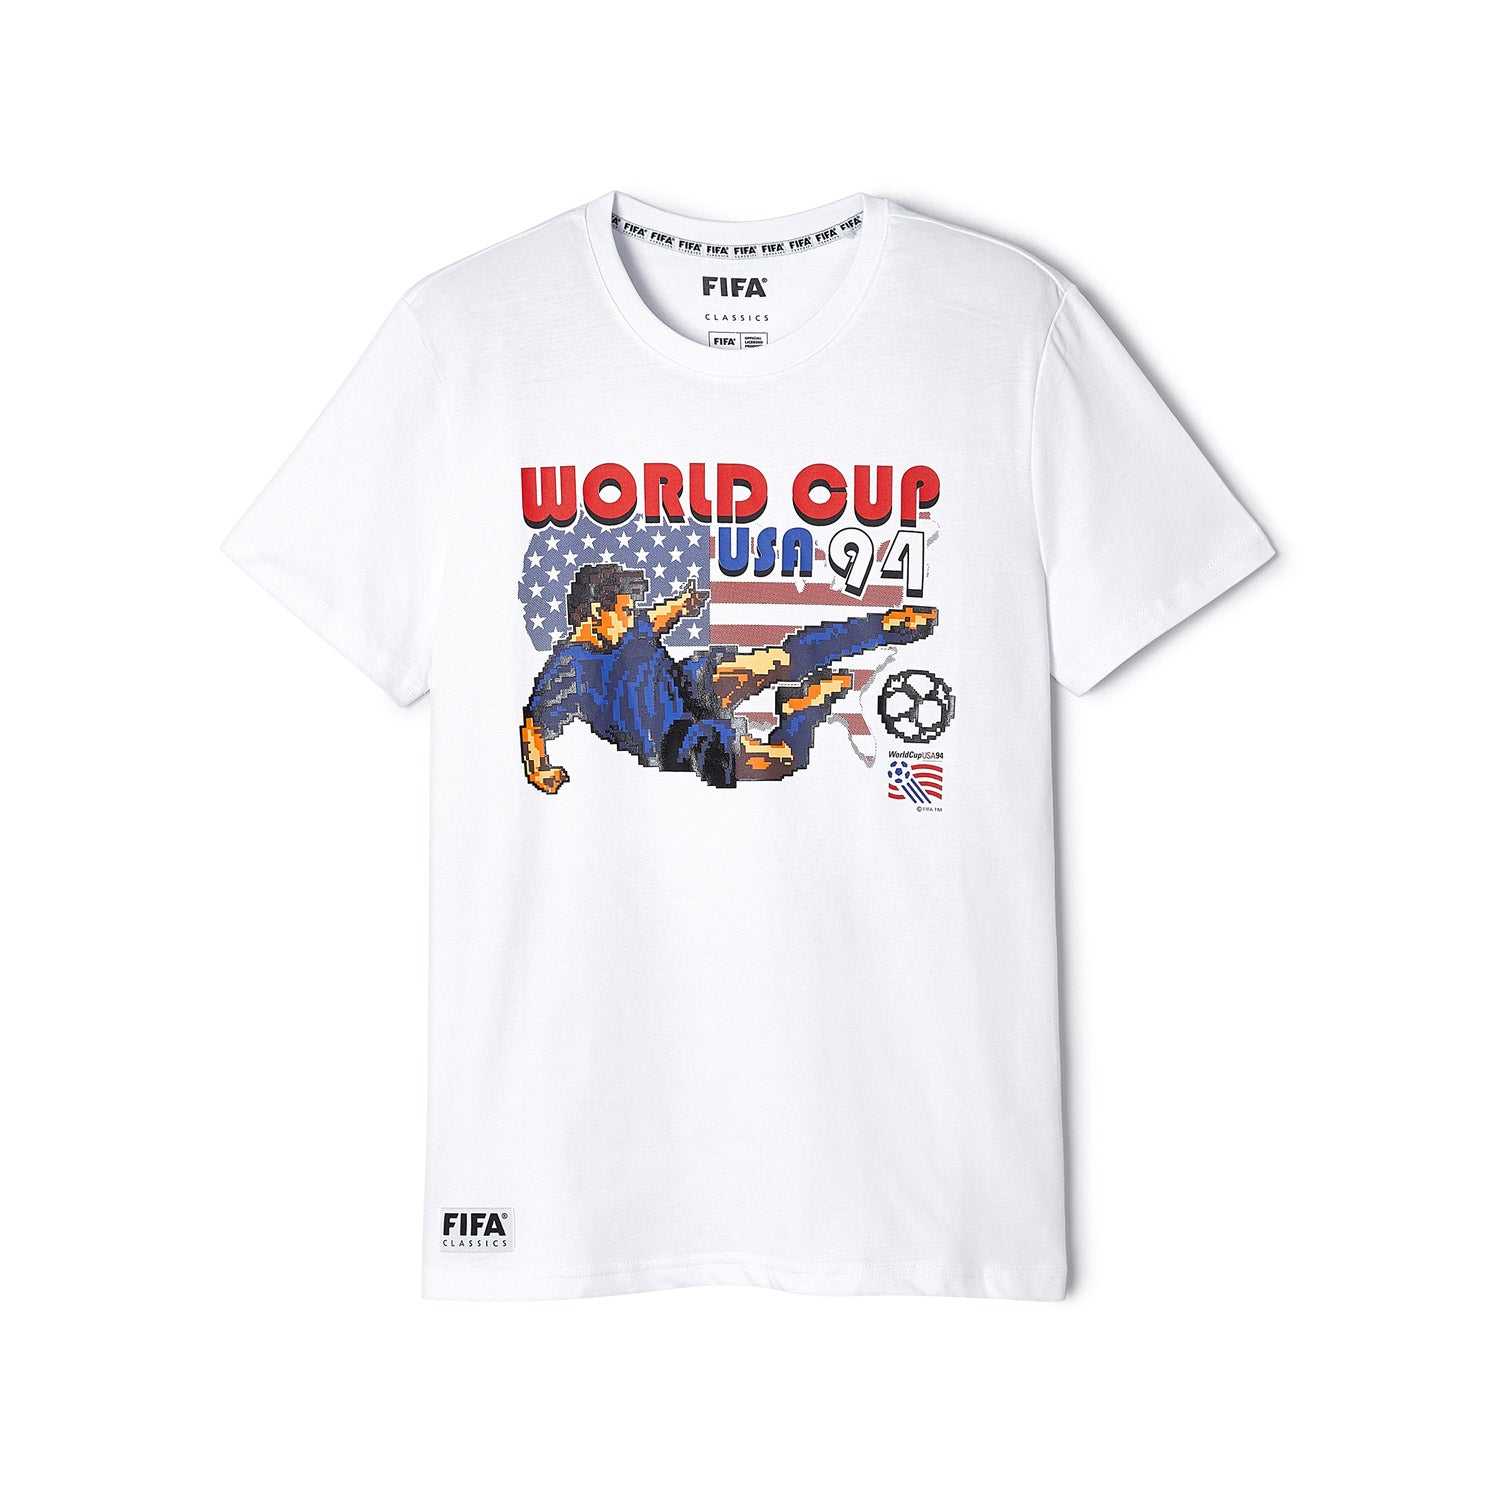 FIFA Rewind USA '94 8-bit T-Shirt - Men's